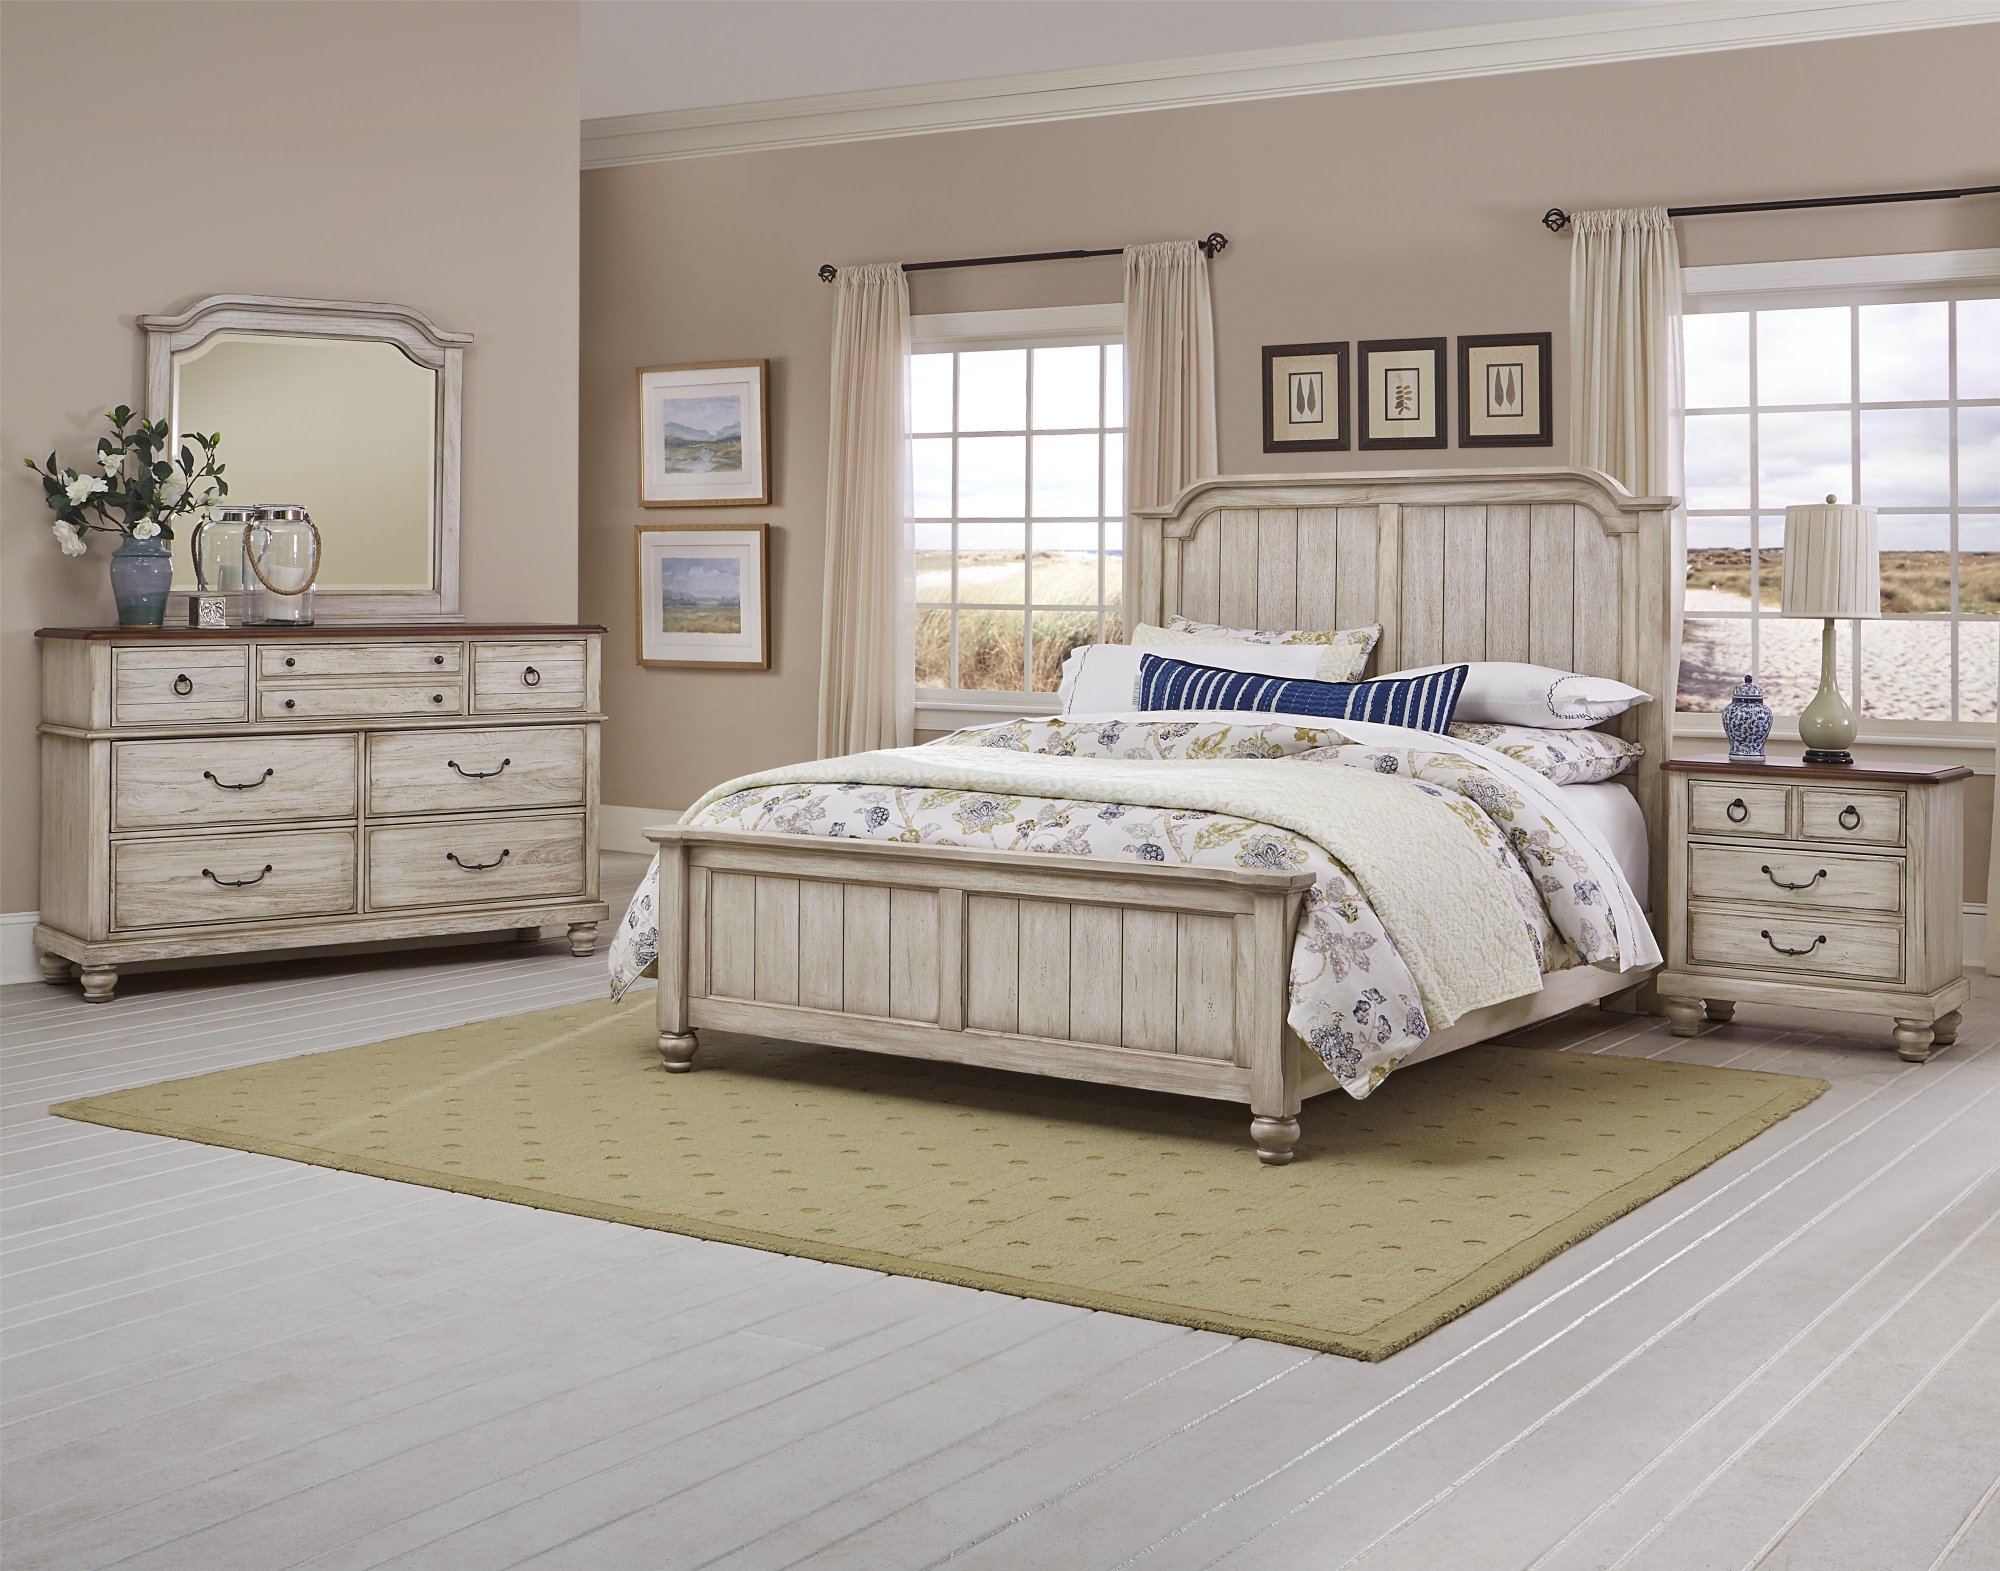 2006 older model bassett white bedroom furniture set